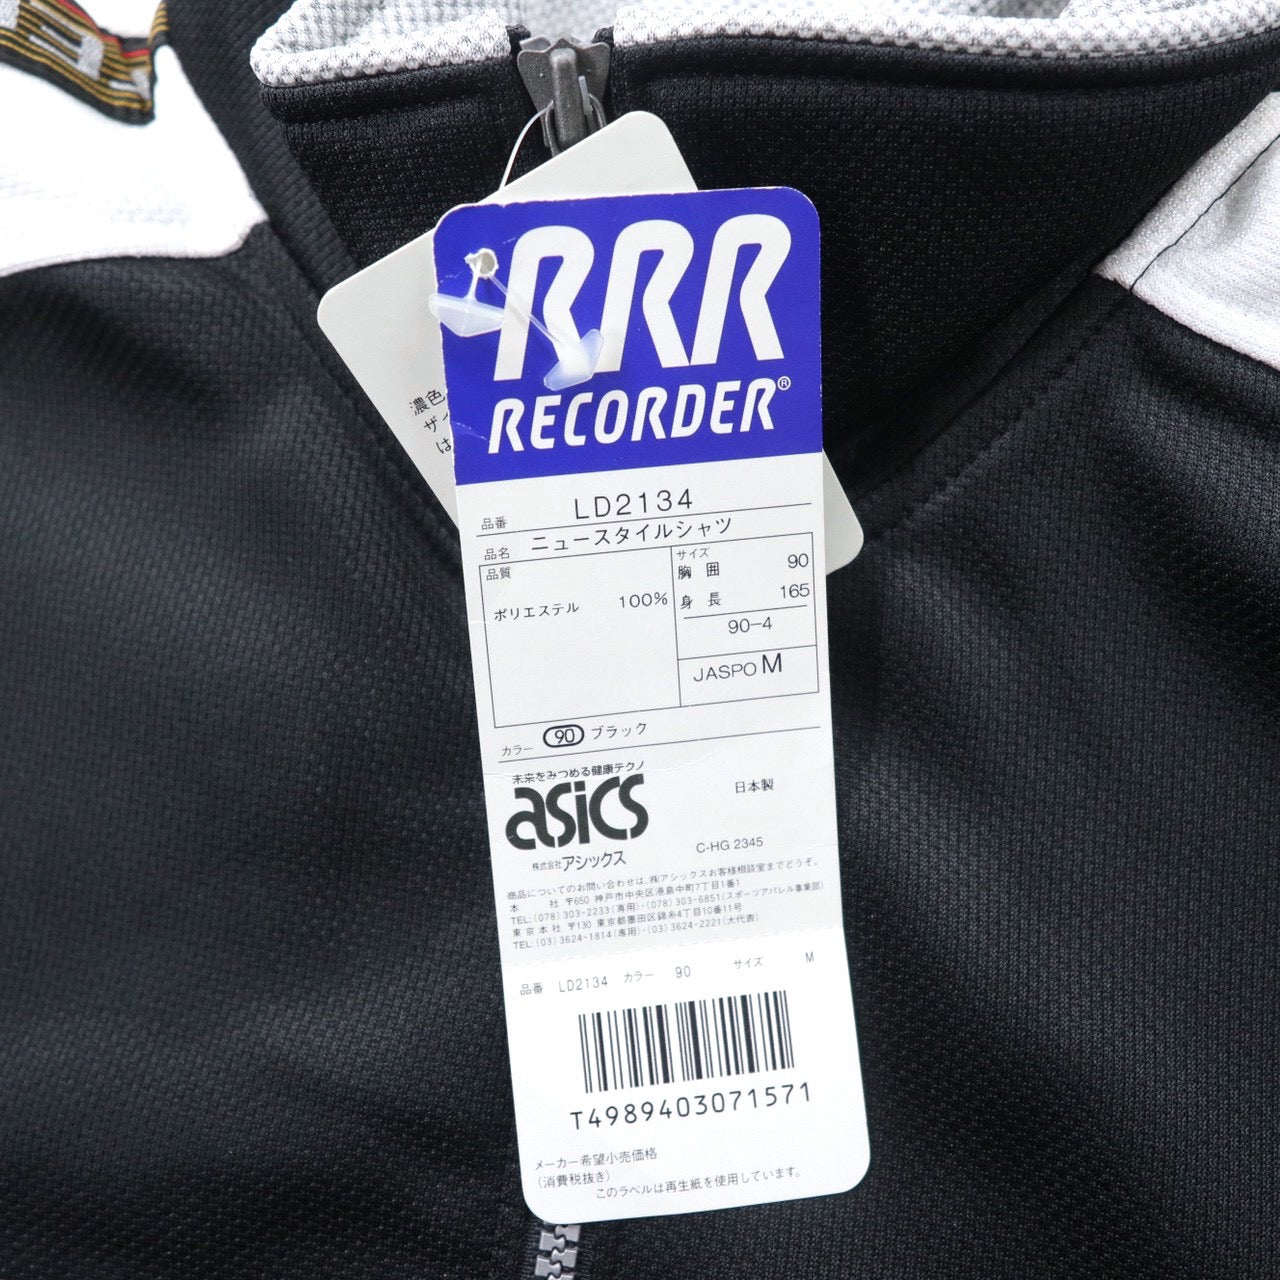 RRR RECORDER ( asics ) ハーフジップ トラックジャケット ジャージ M ブラック ポリエステル サイドライン ビッグサイズ 90年代 日本製 未使用品